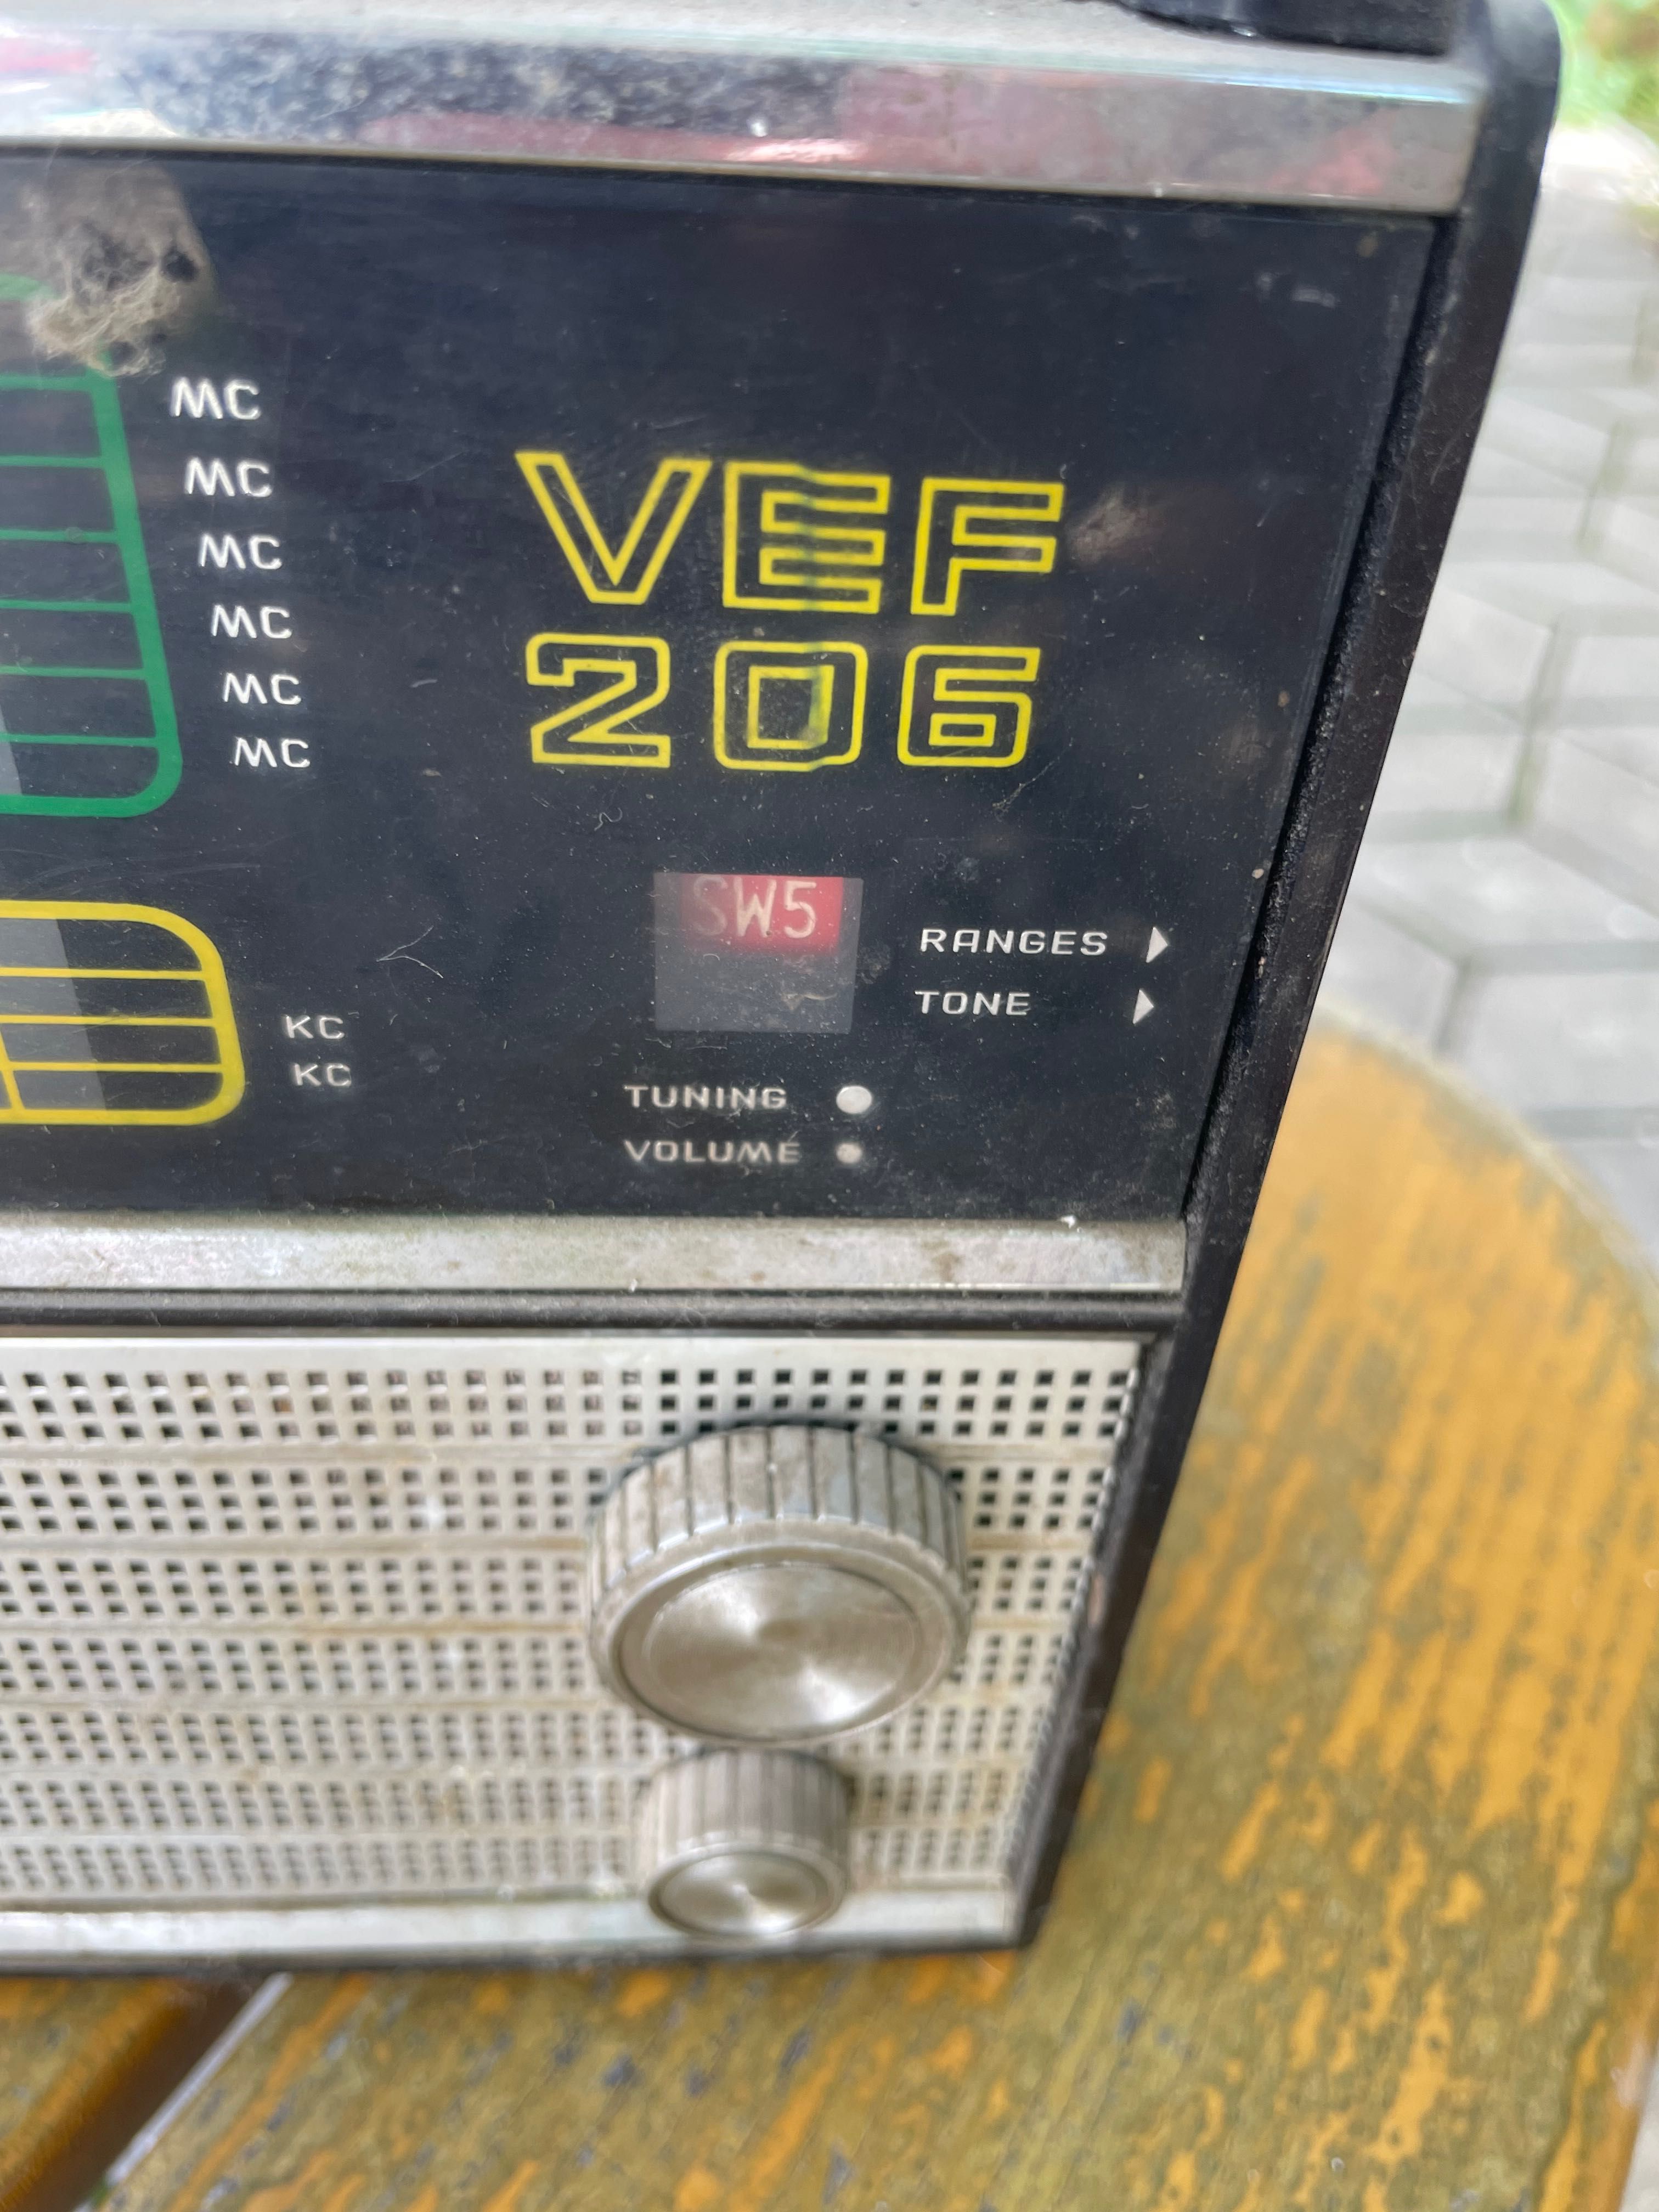 Радиоприёмник(раритет) ВЕФ 206 VEF 206